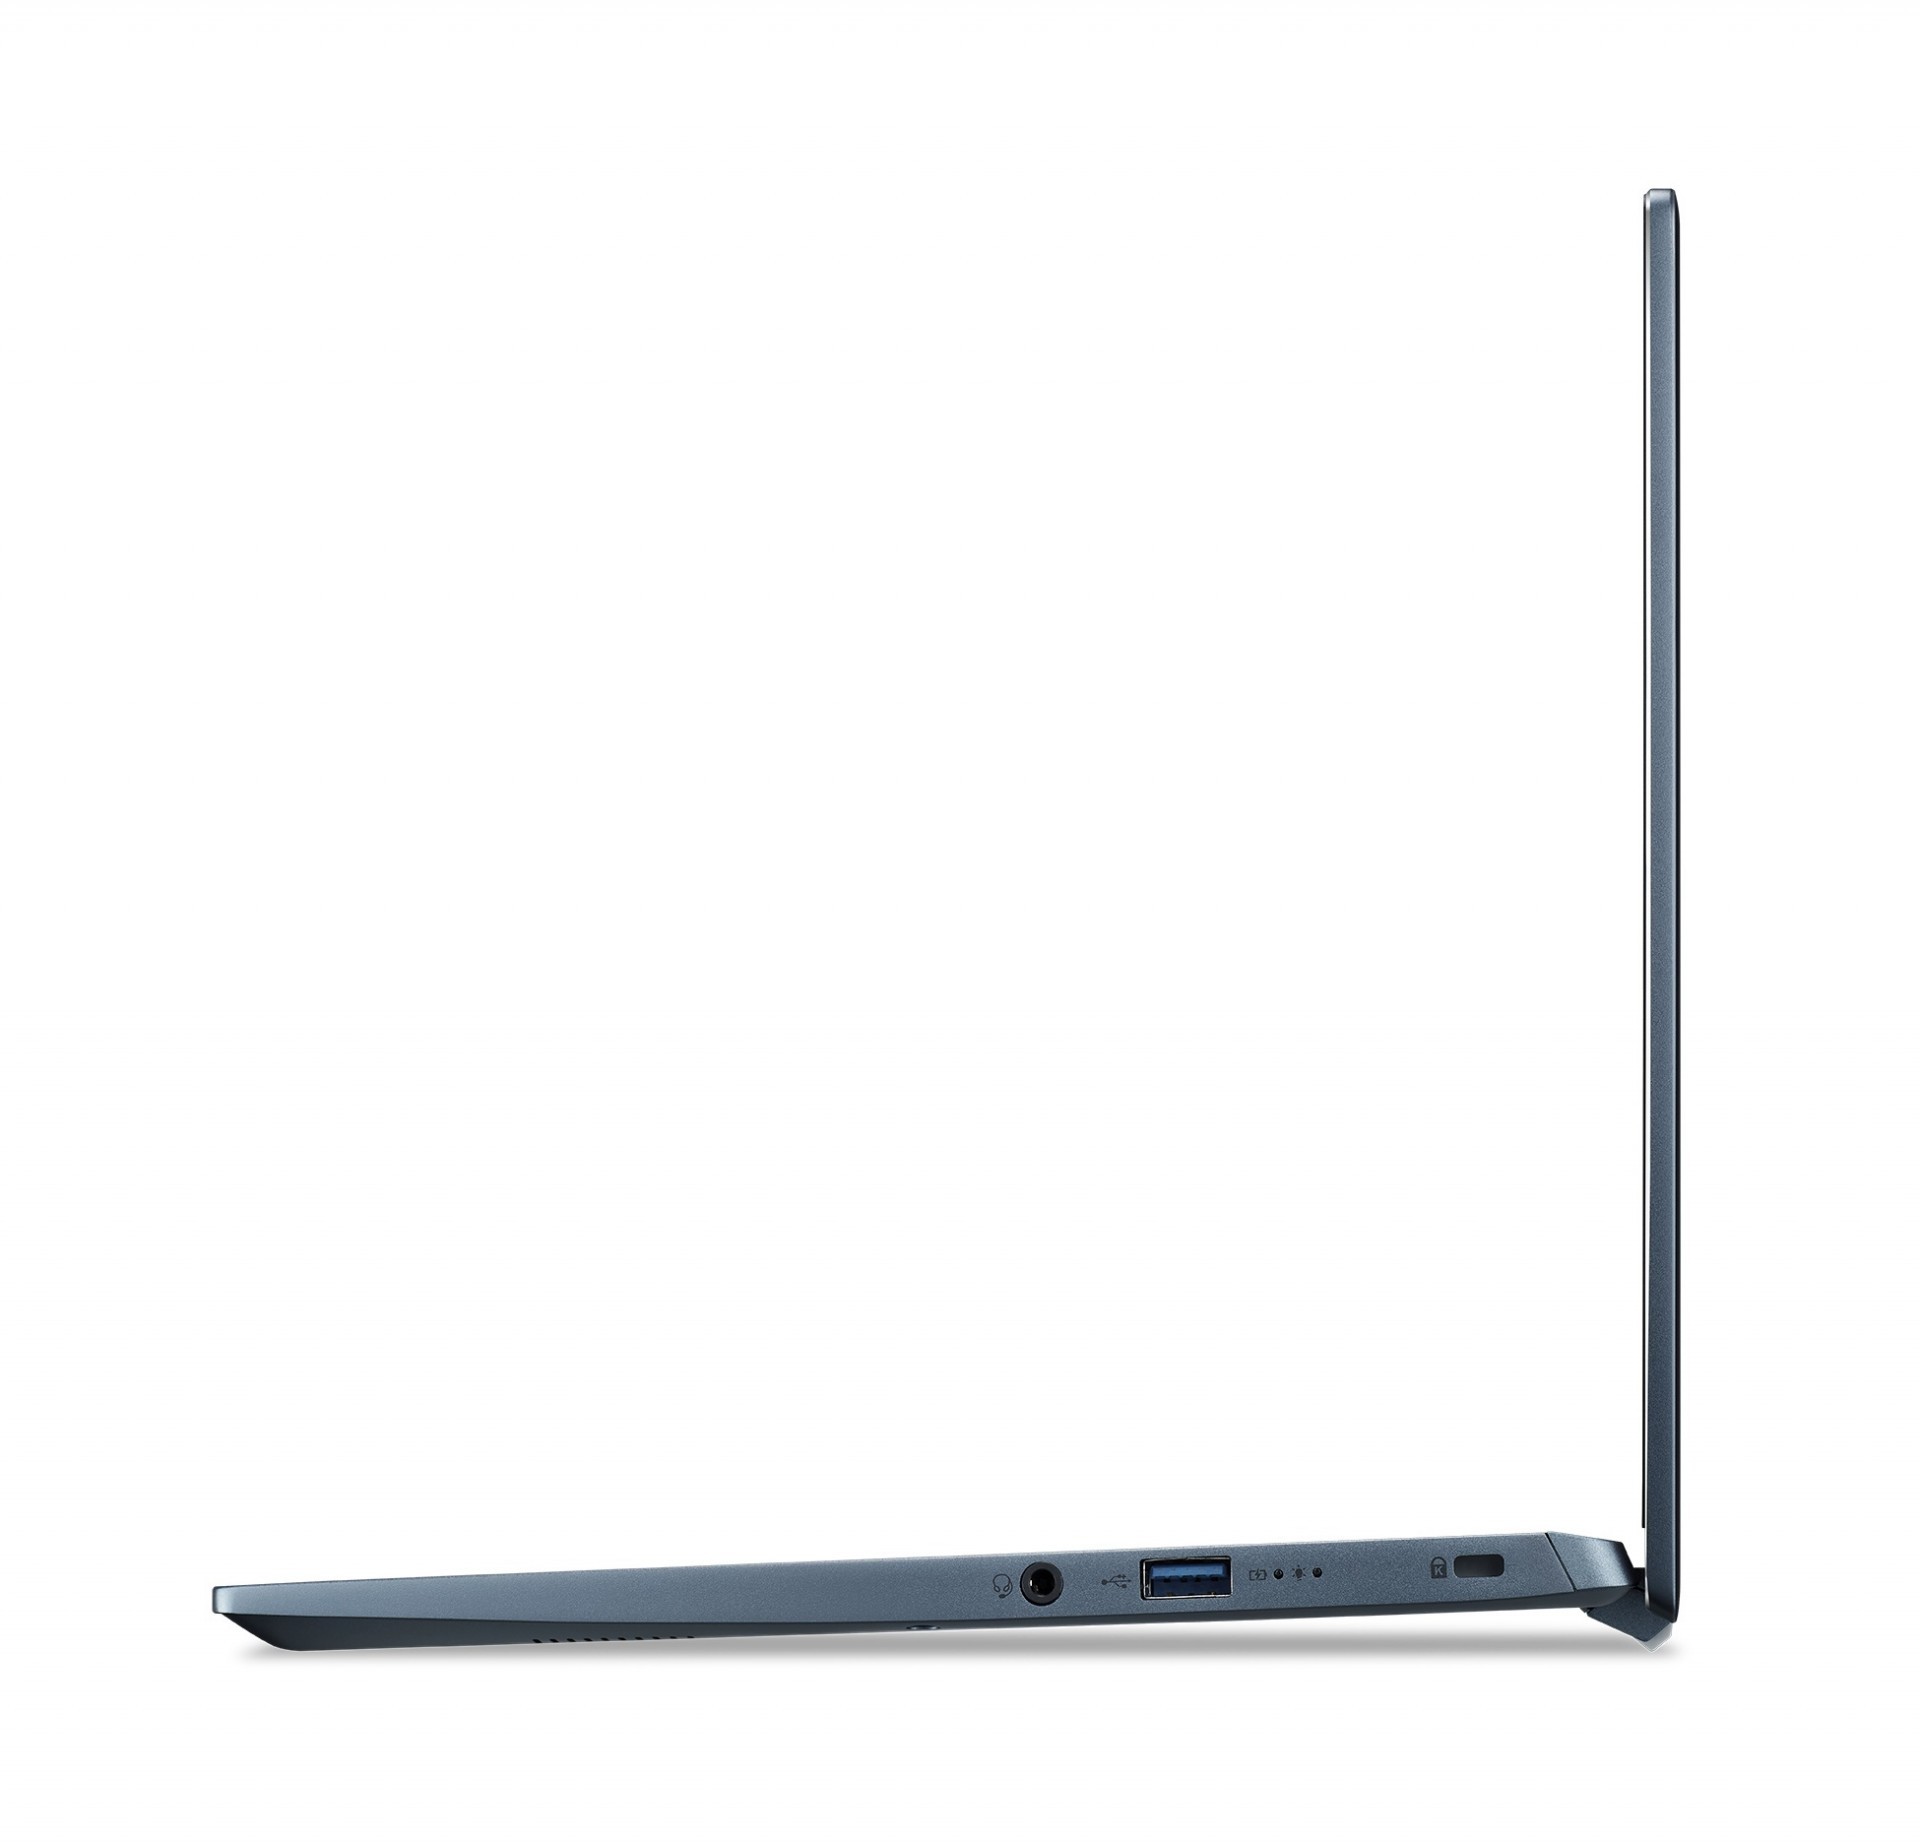 宏碁 Swift Evo 輕薄筆電將於 24 日「Acer Swift 風格野餐日」亮相